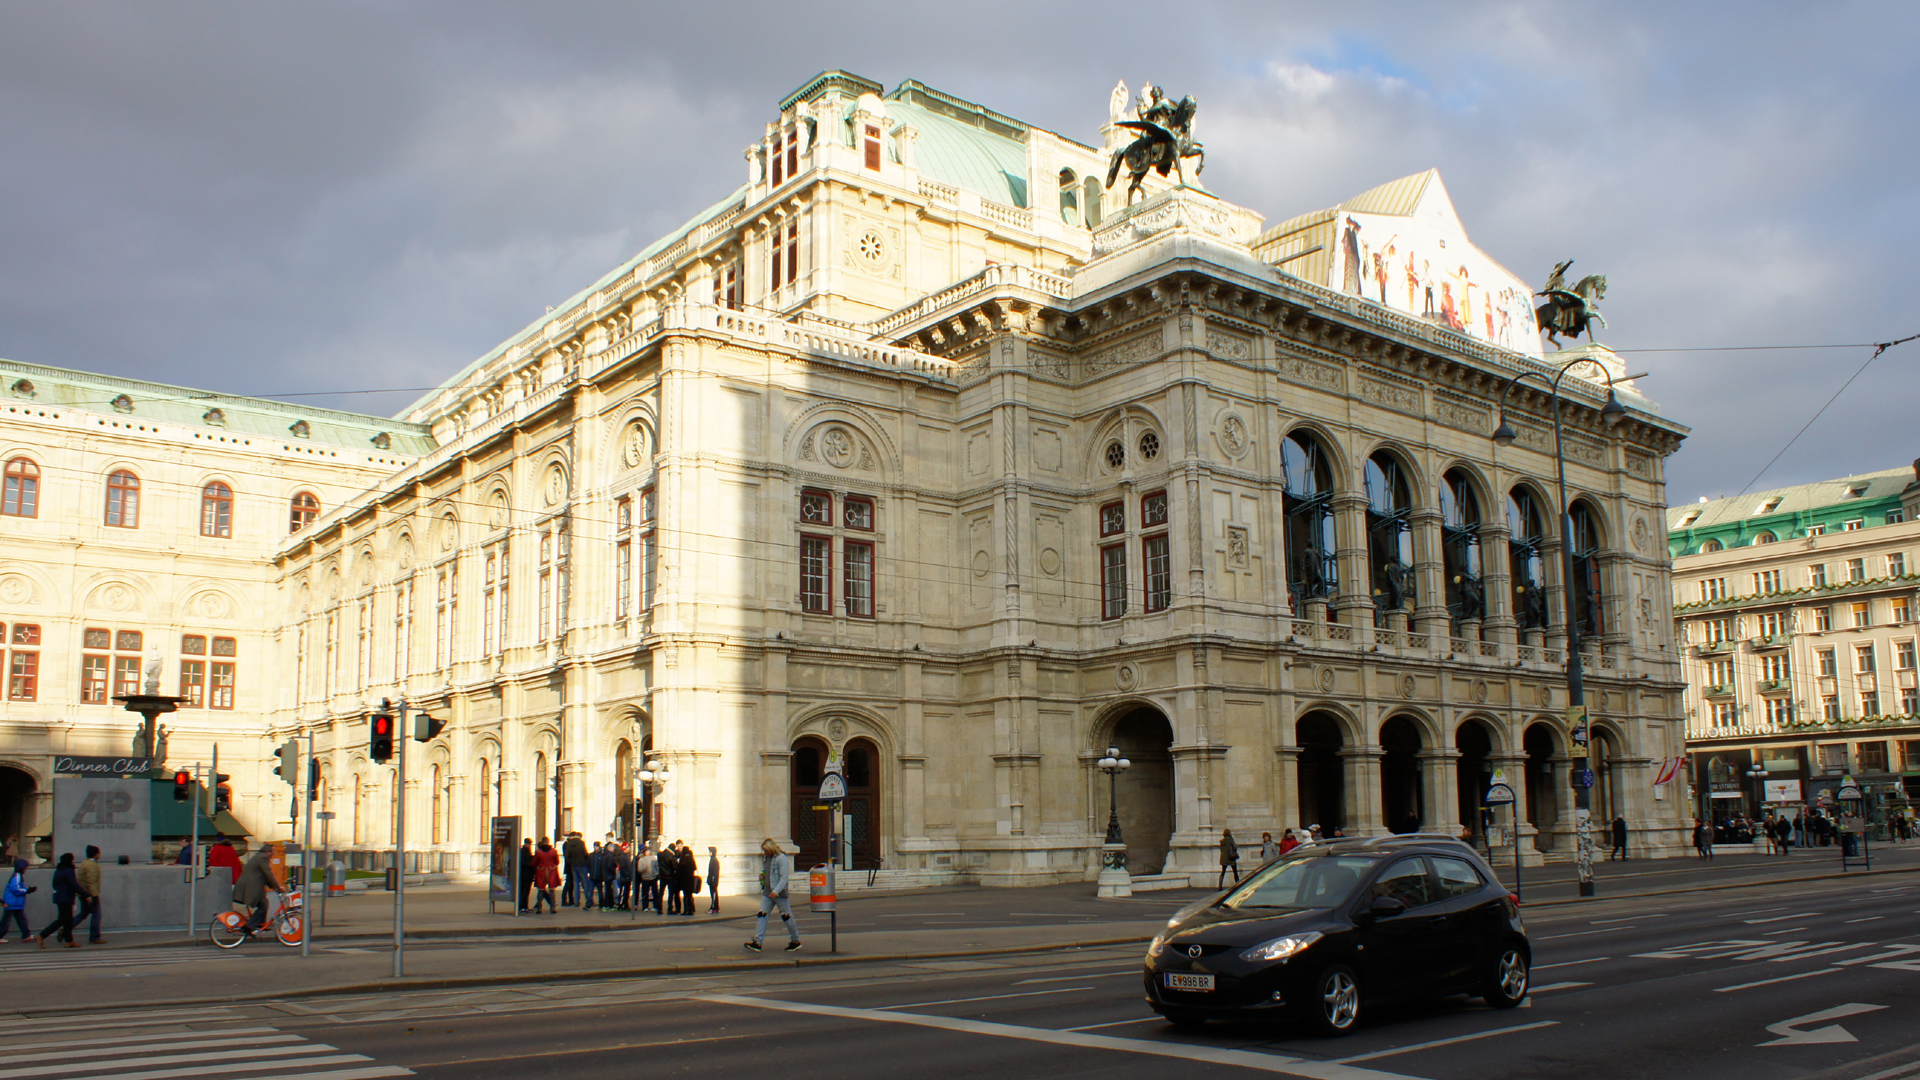 Oper Wien / Wiener Staatsoper